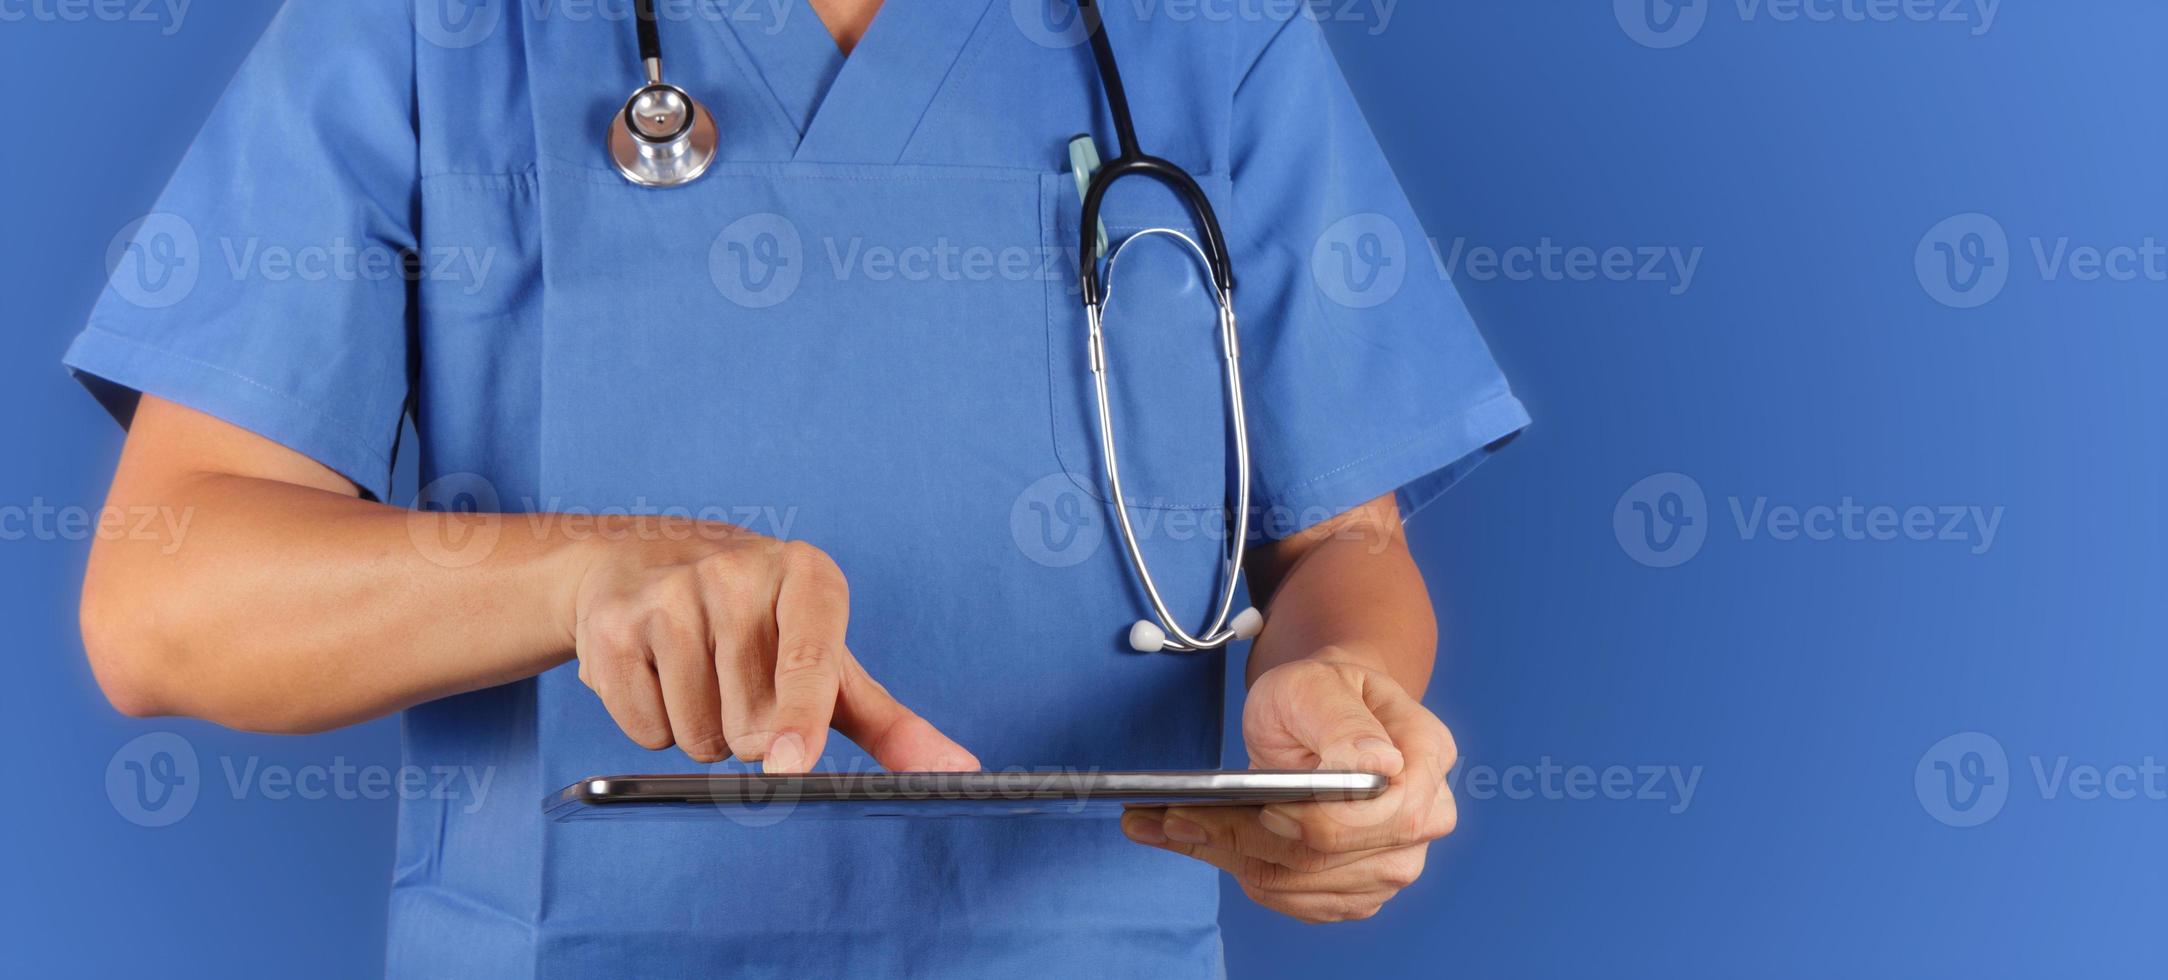 läkare som arbetar med surfplatta på blå bakgrund foto